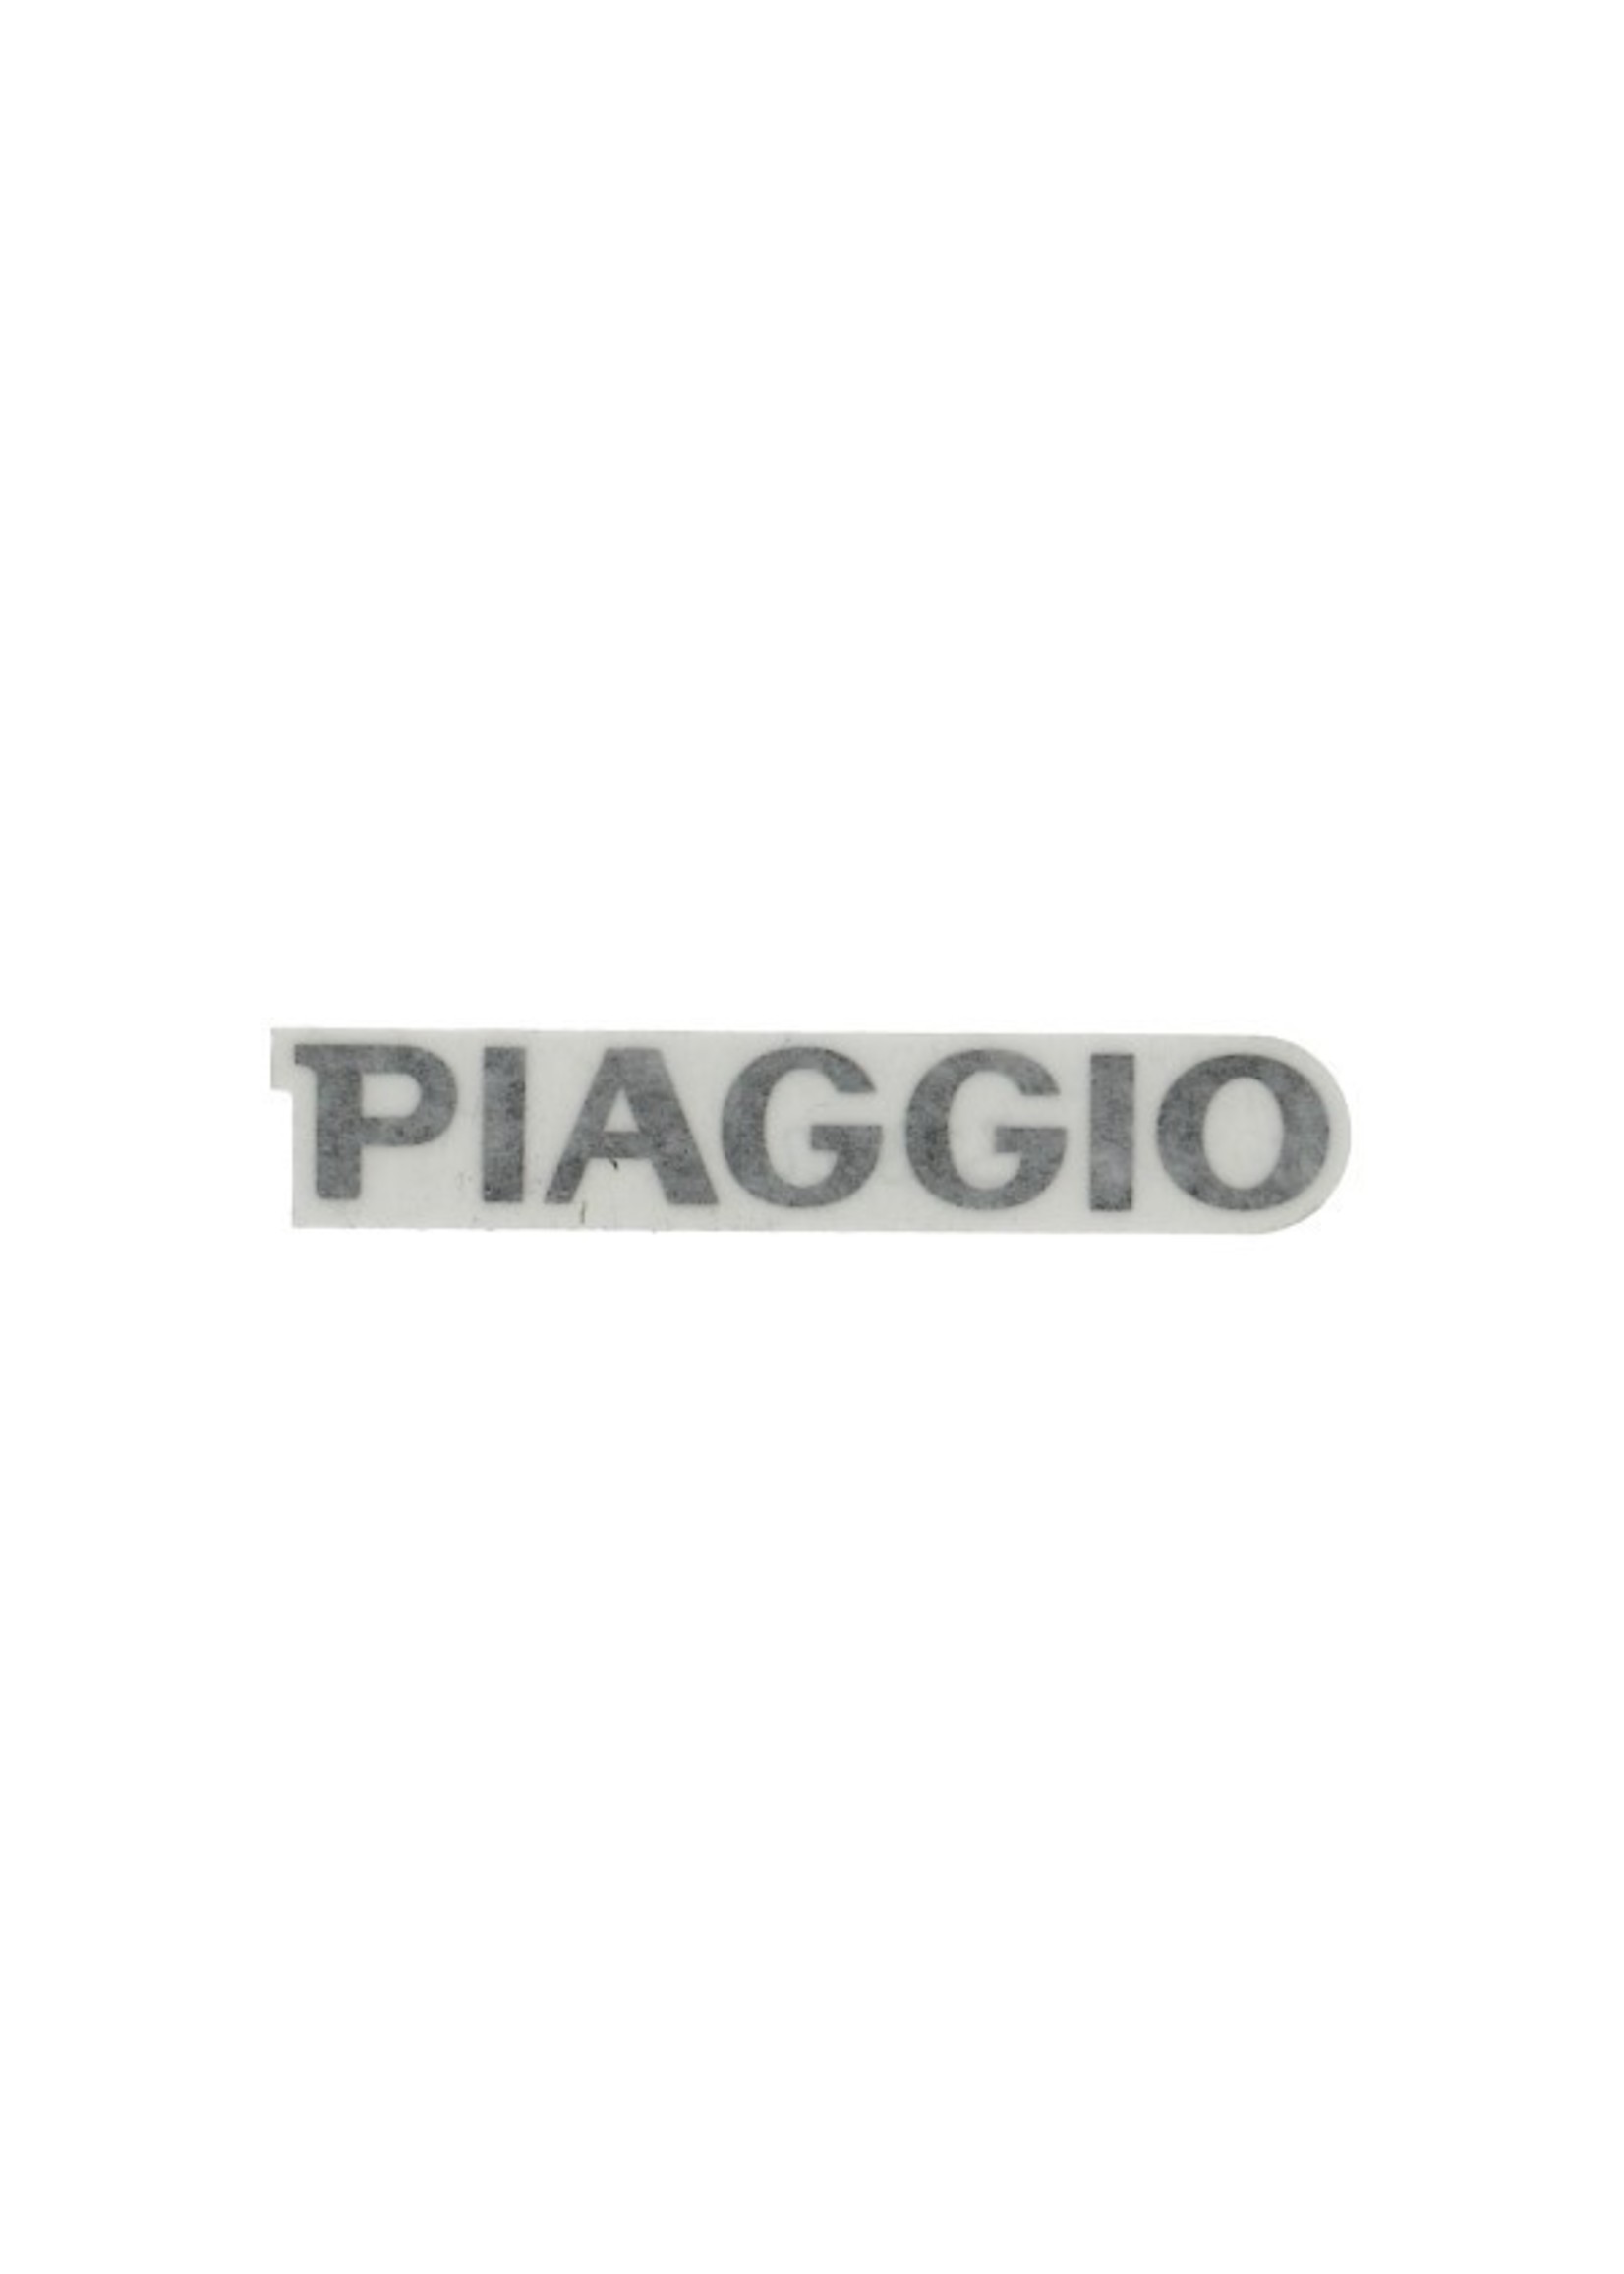 Piaggio sticker piaggio woord [piaggio] voorscherm zip2006 4t piag orig cm000402000n